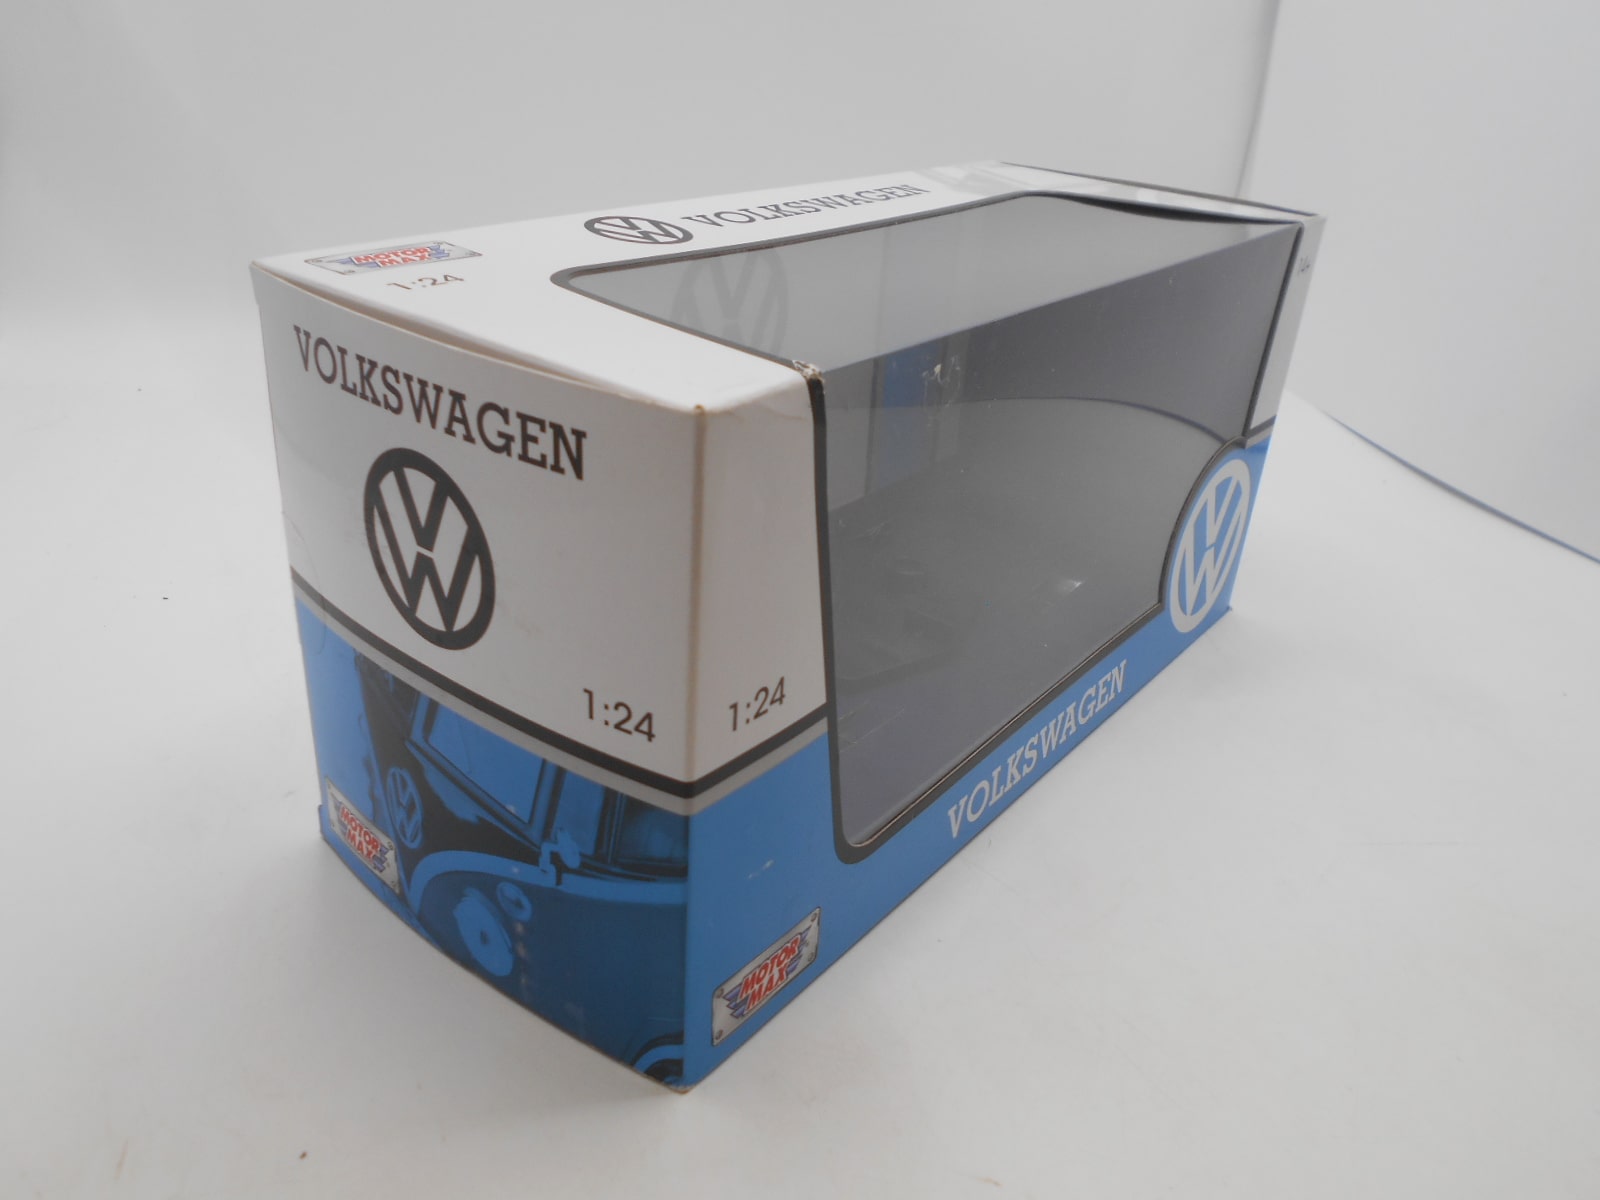 MotorMax Volkswagen 1/24 scatola vuota, modello non compreso